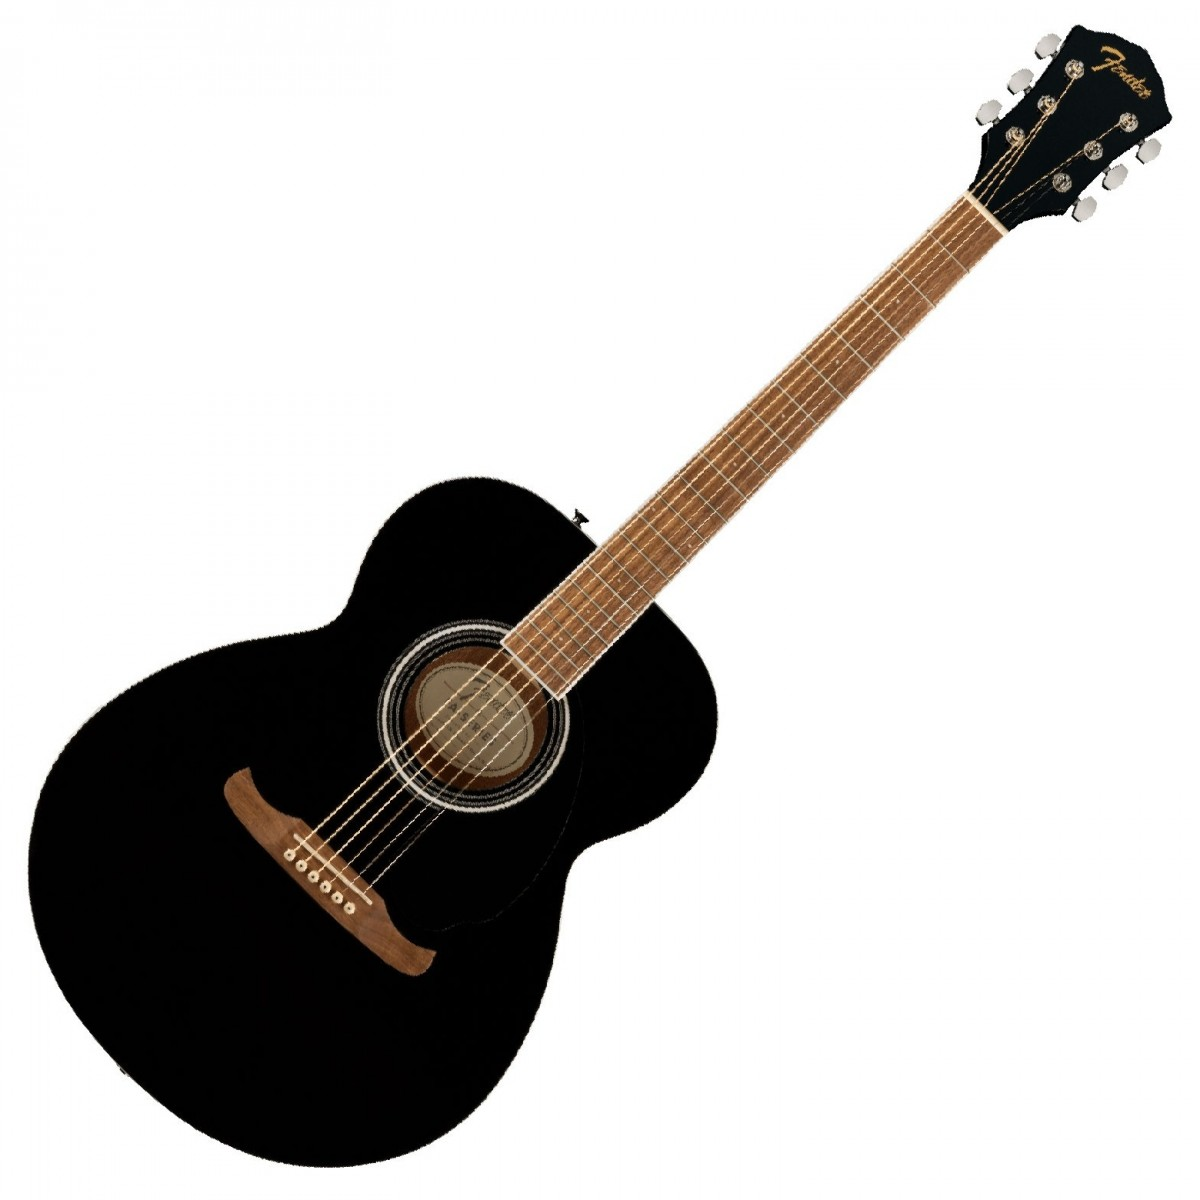 Fender’s DE FA-135 Concert Guitar